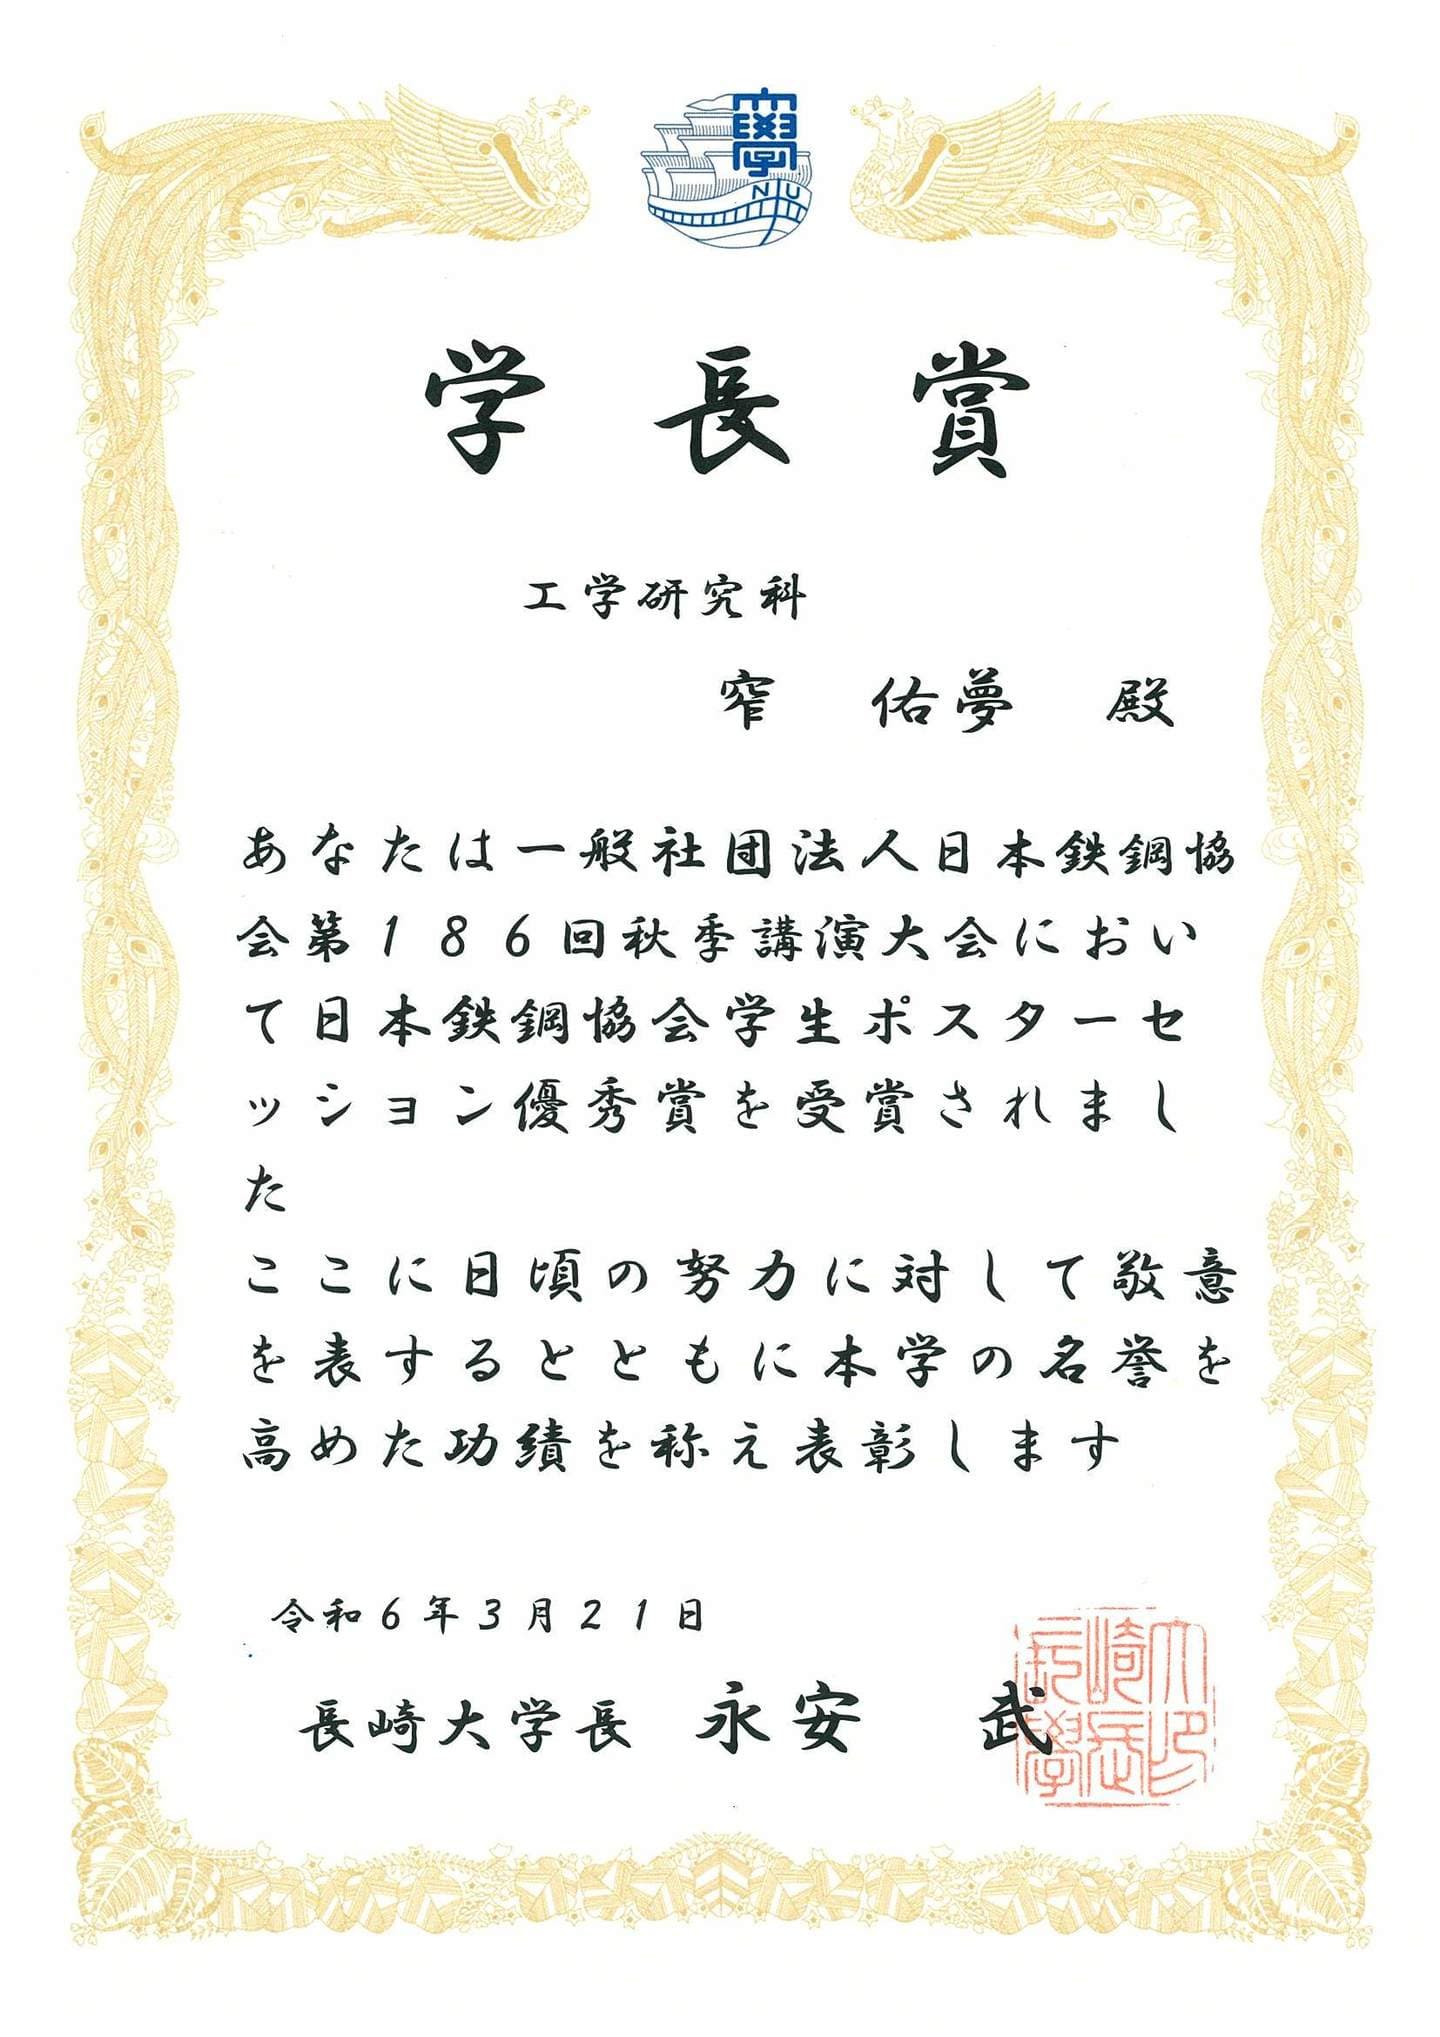 窄佑夢君(M2)が、学長賞(学術研究分野)を受賞しました。2024/03/21